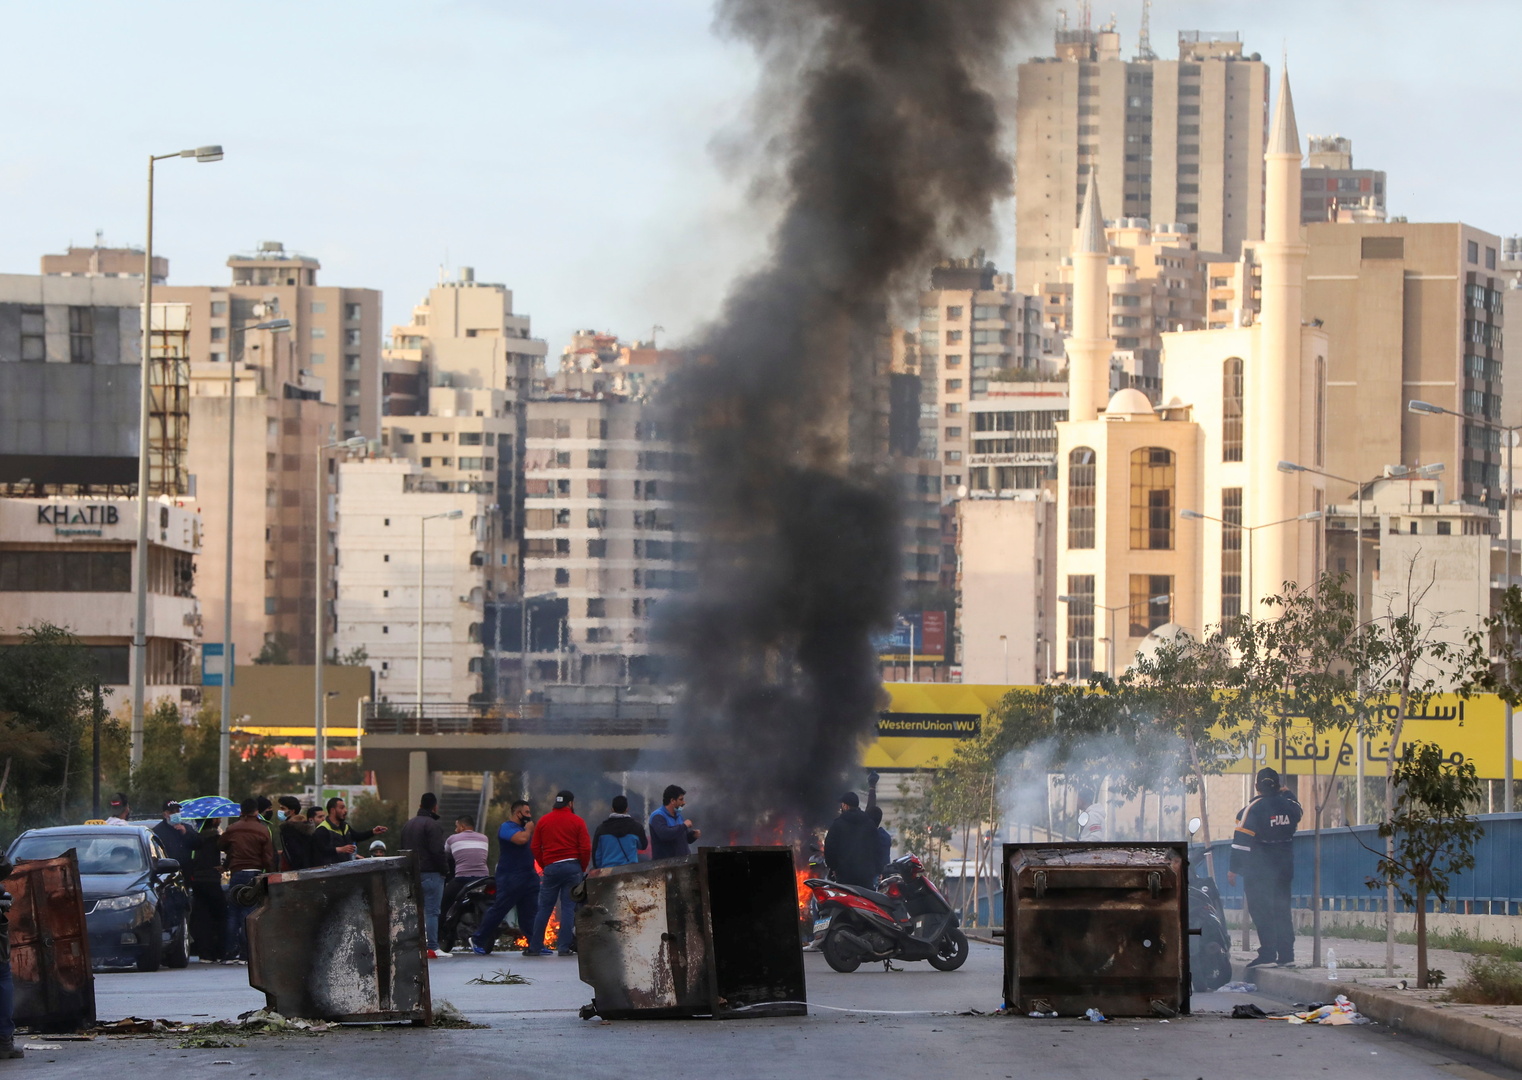 الأمم المتحدة: الاستقطاب السياسي يعيق الإصلاحات الرئيسية في لبنان